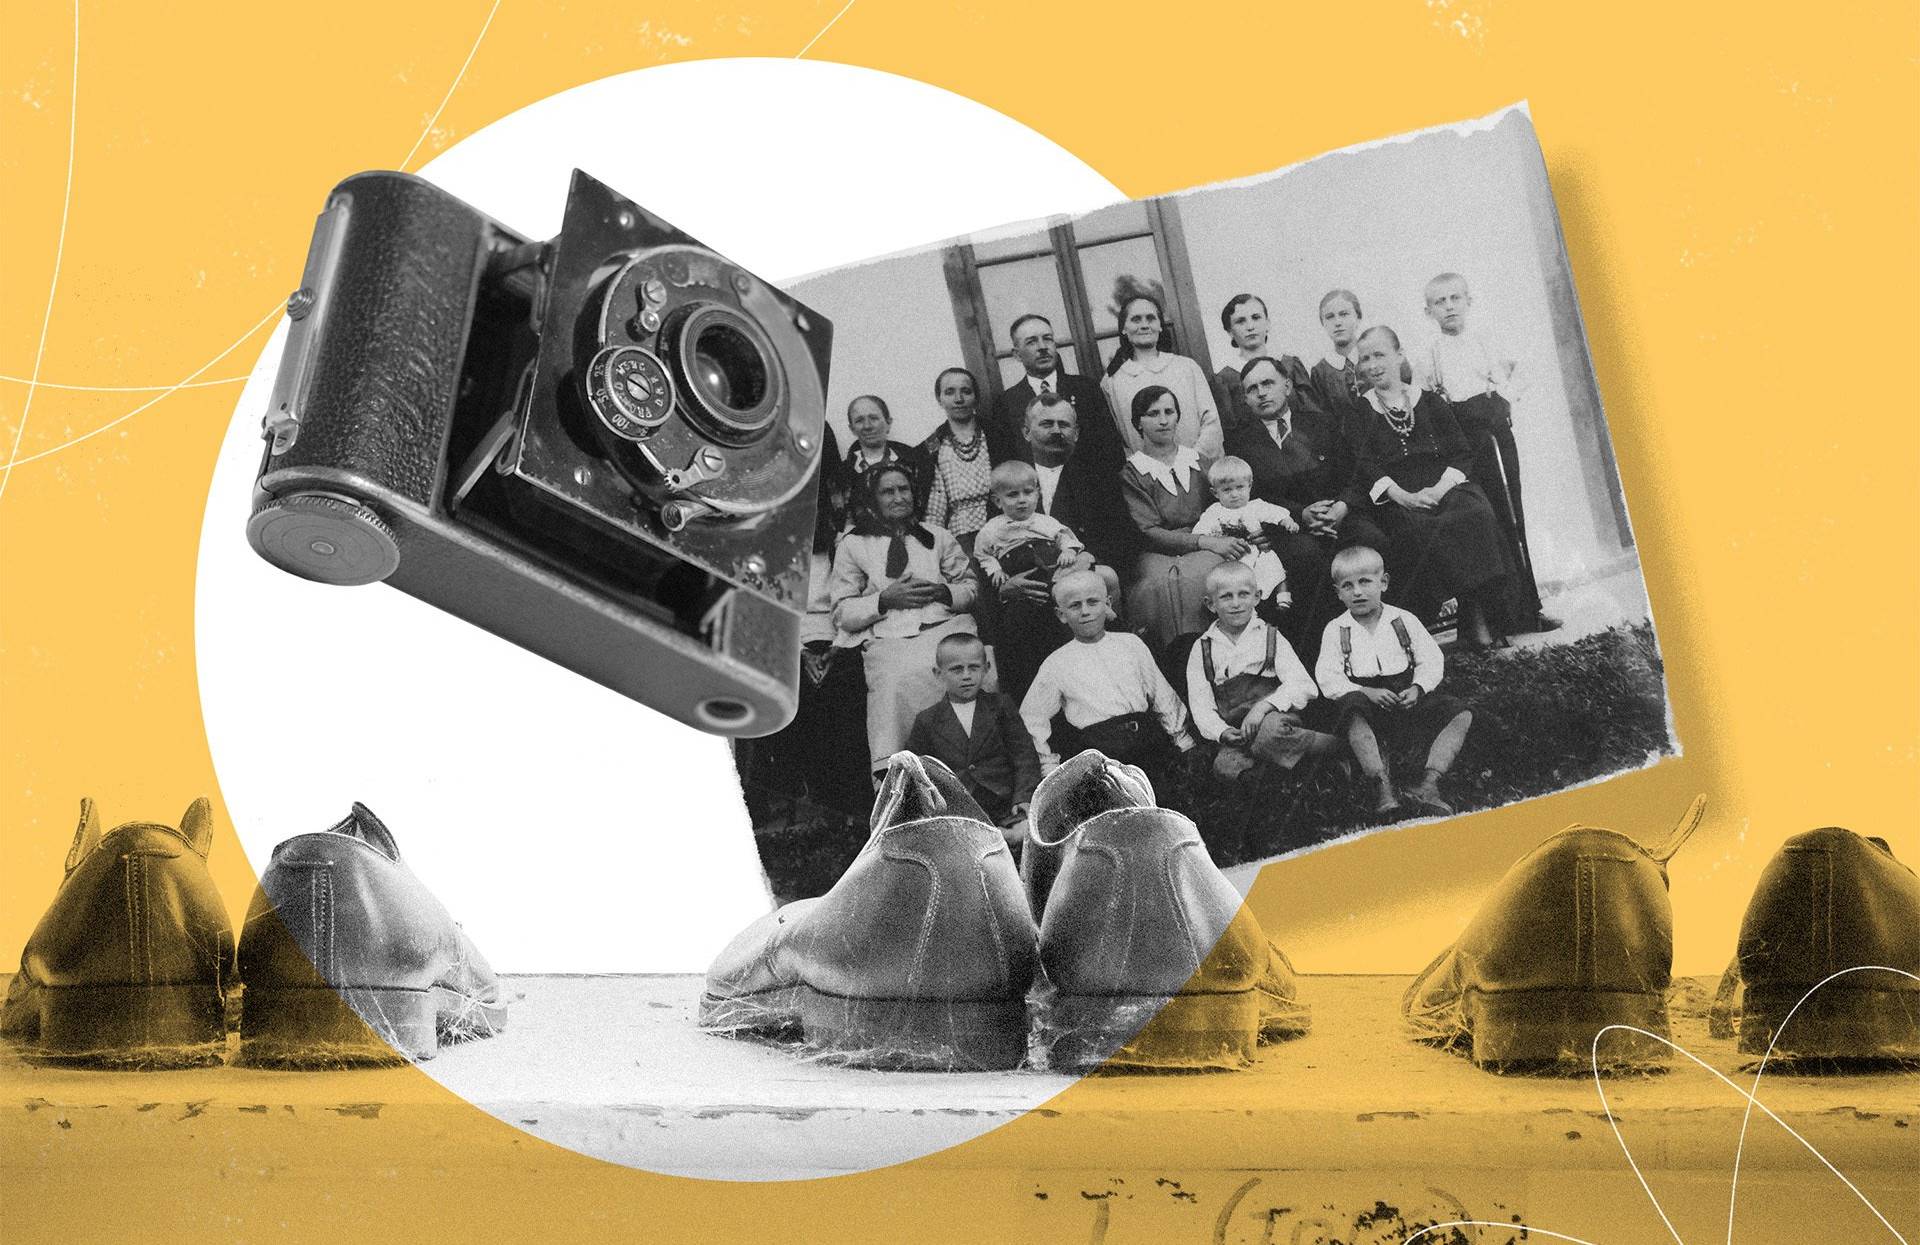 Grafika: zdjęcie chłopskiej rodziny, stary aparat fotograficzny i szafka z butami. Wszystko na żółtym tle nawiązującym do okładki książki "Chłopki"